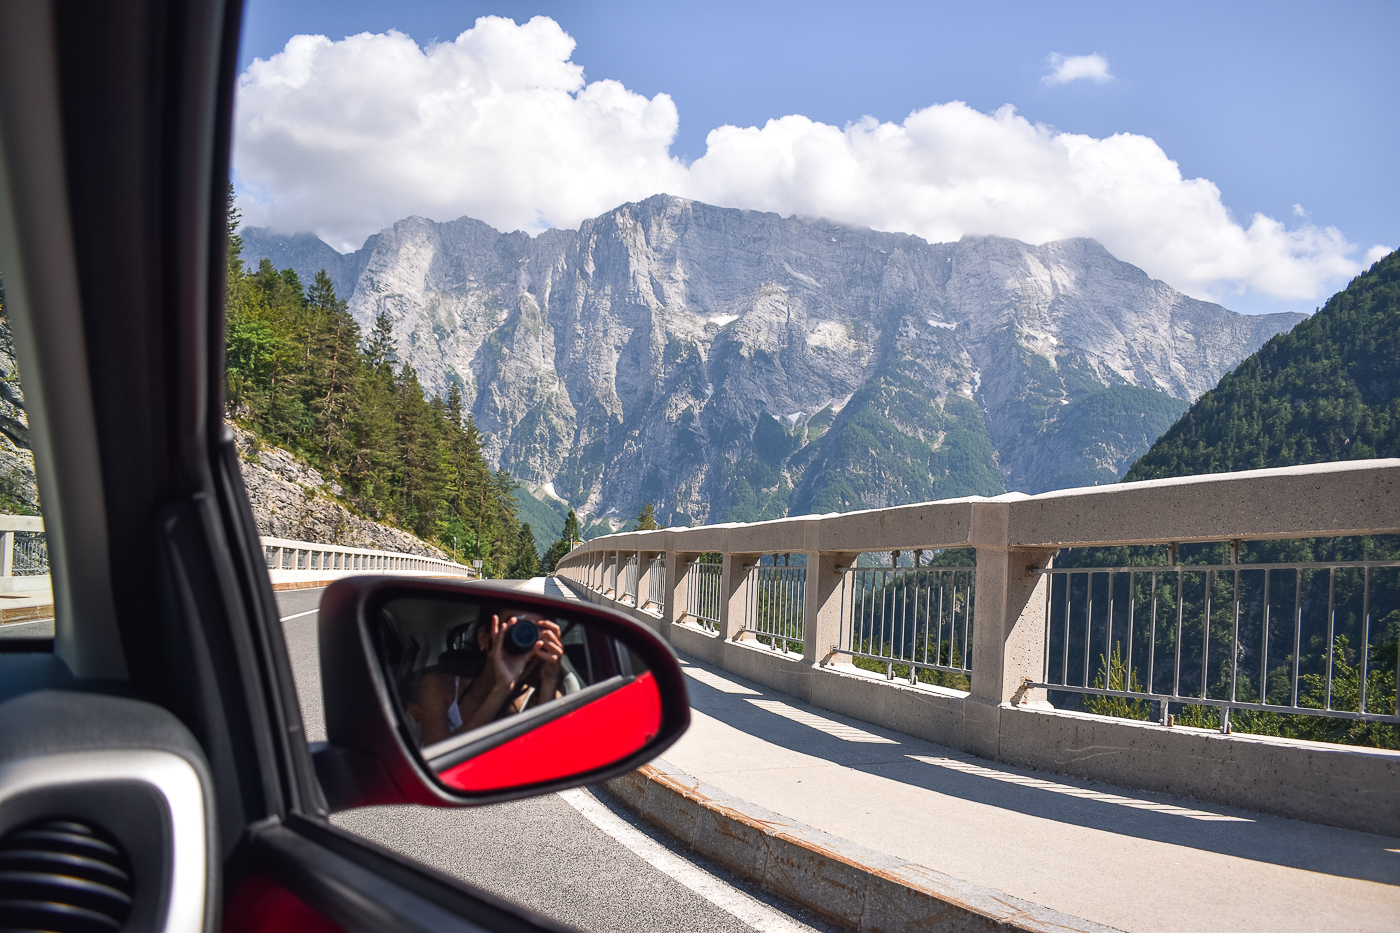 Alugar carro e dirigir na Eslovênia